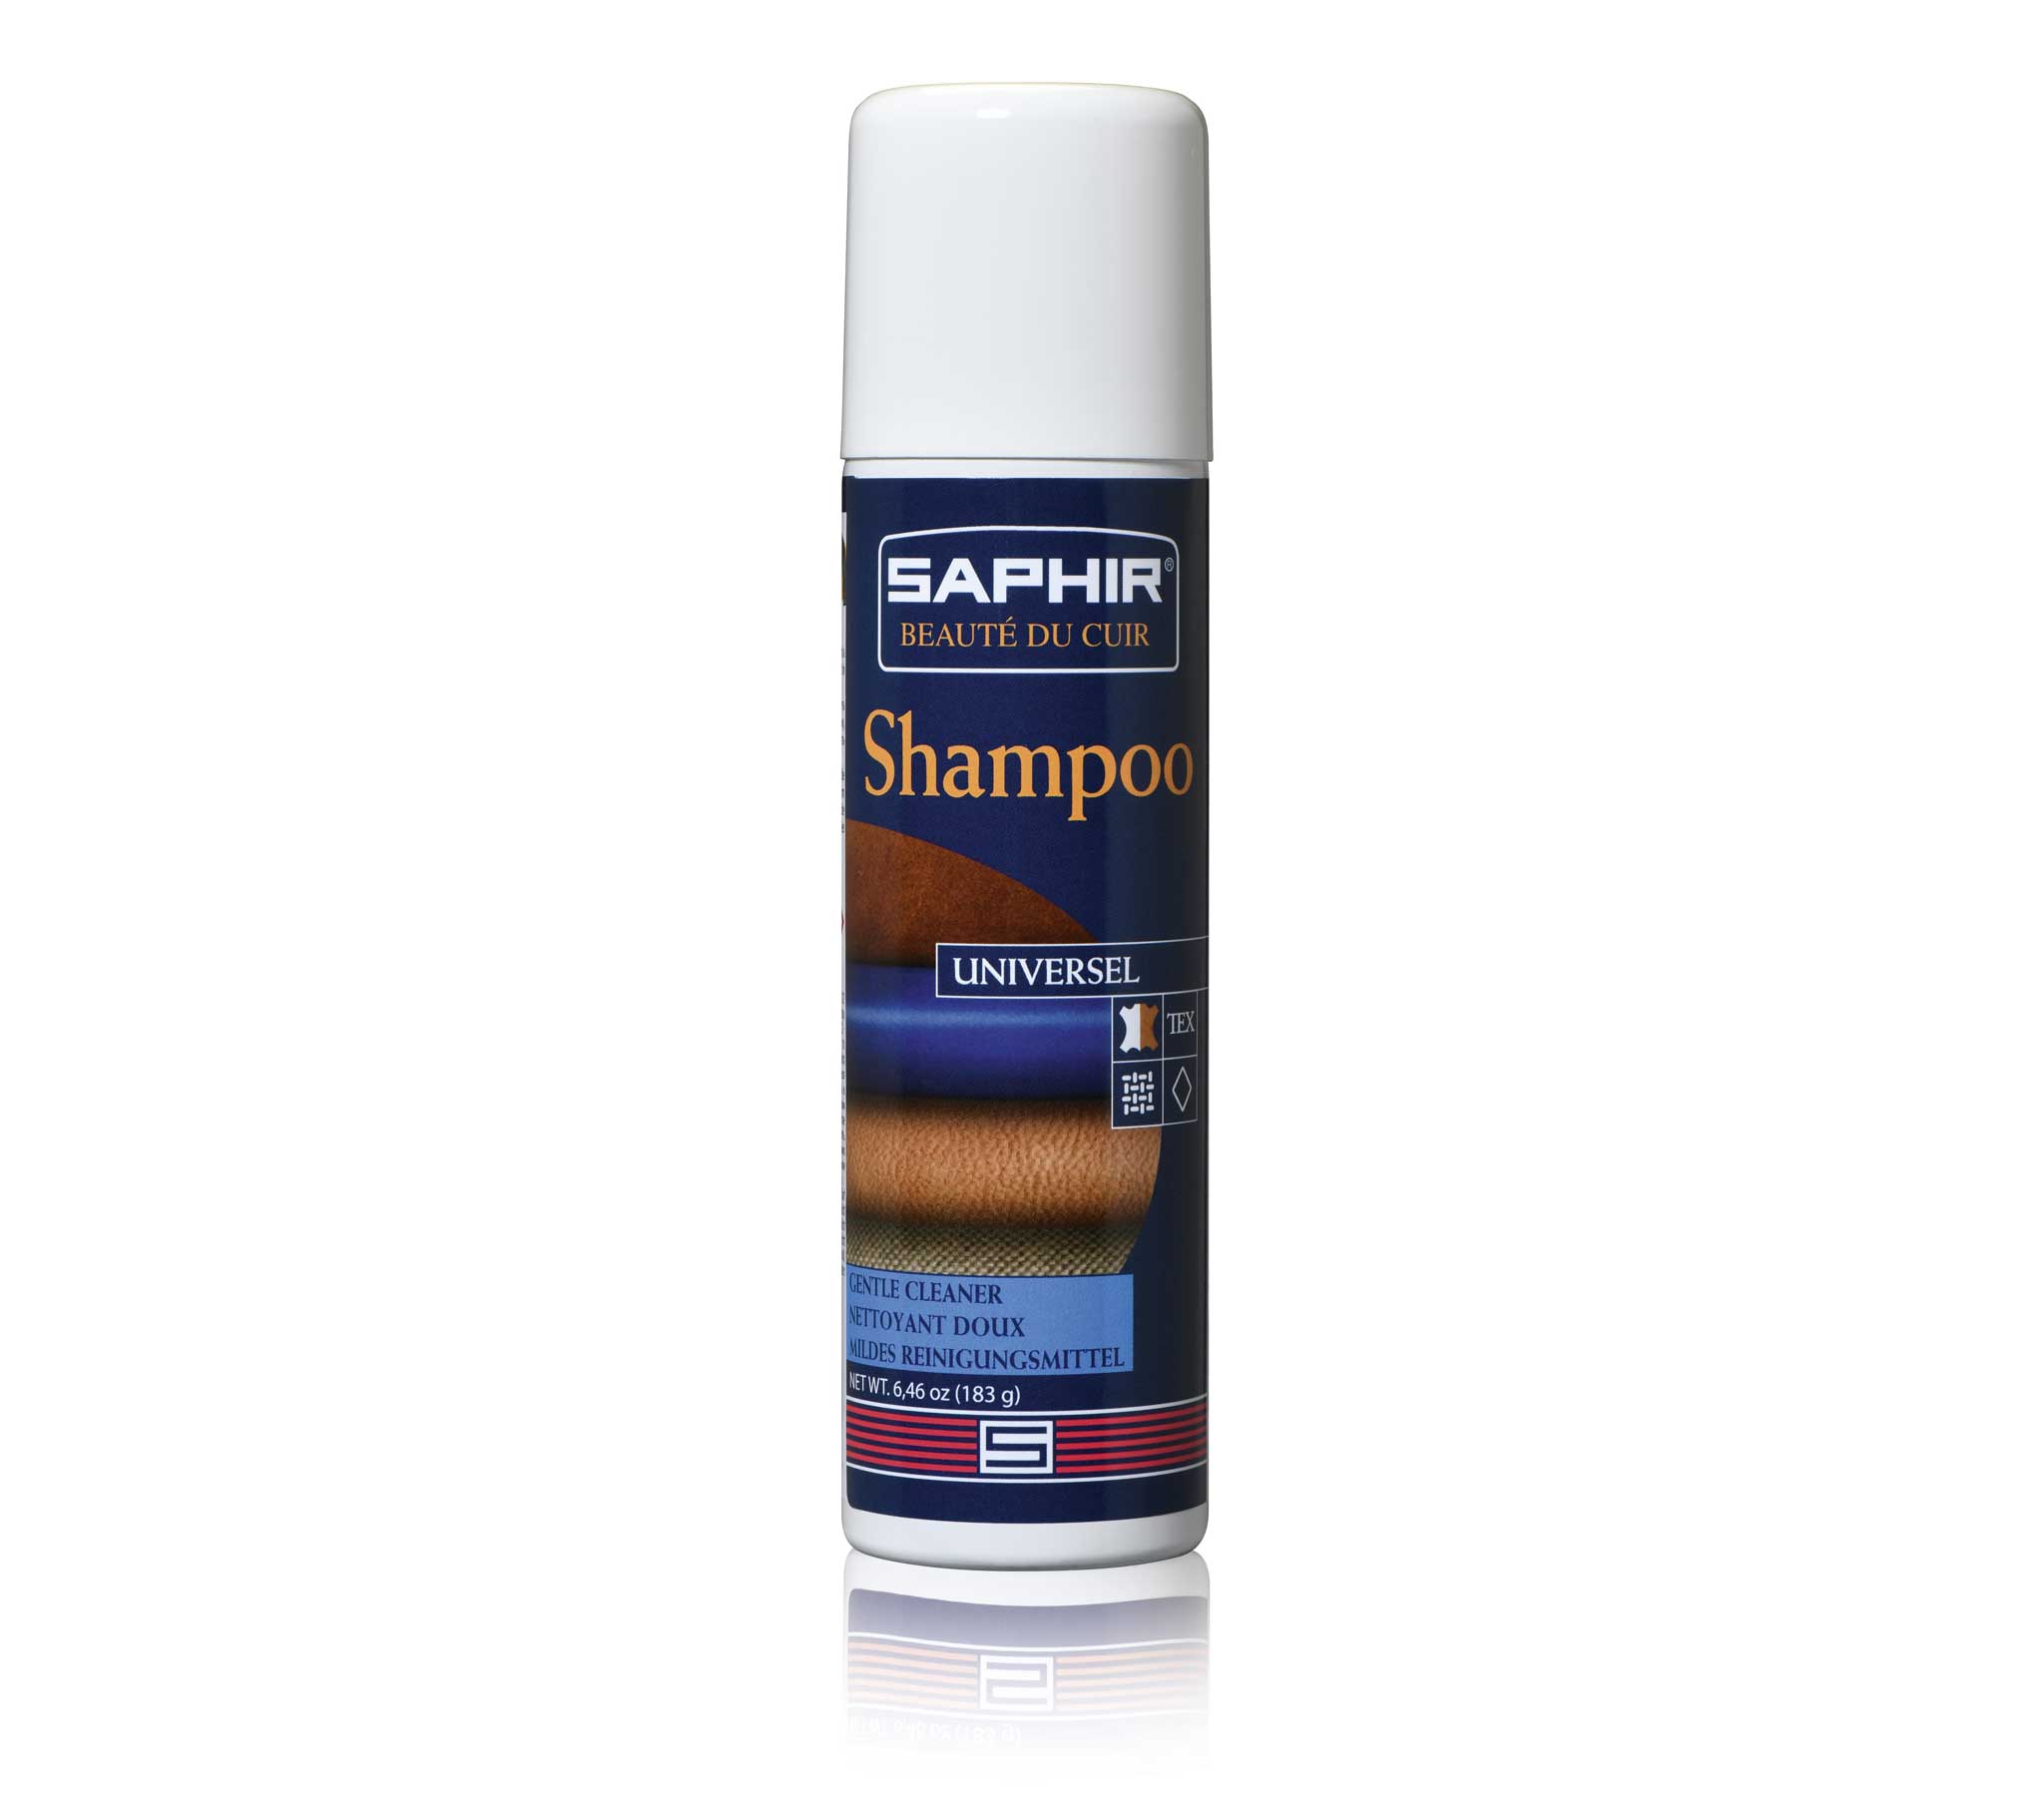 Saphir Beaute du Cuir - Shampoo